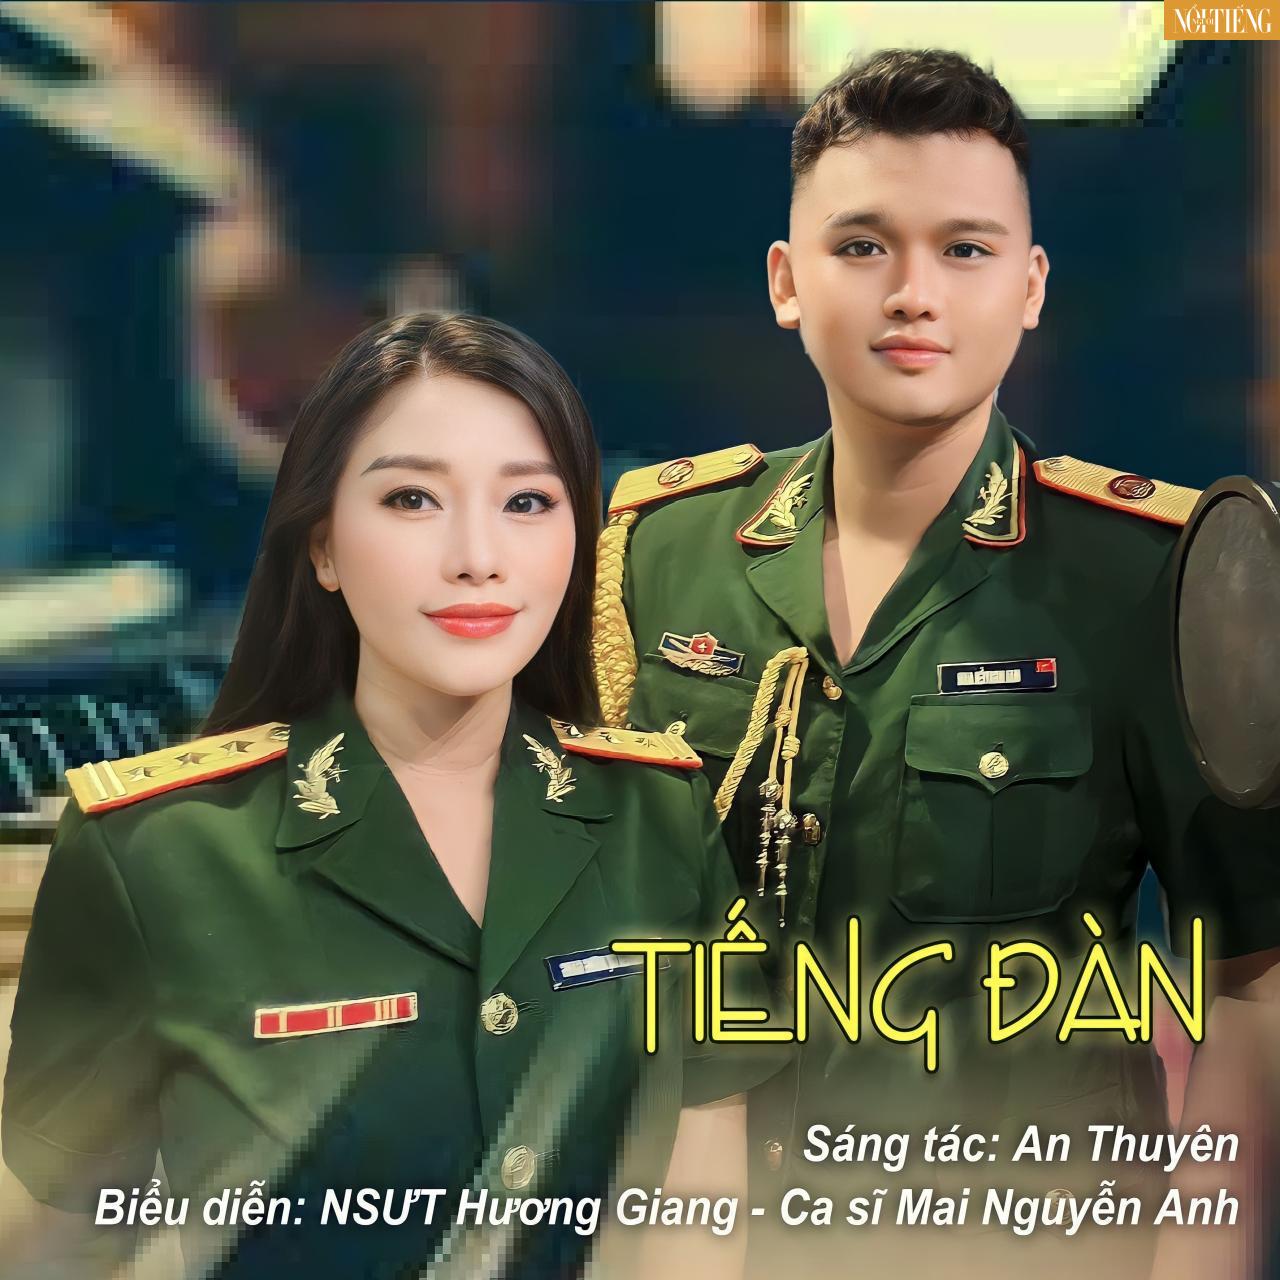 NSƯT Hương Giang và Ca sĩ Mai Nguyễn Anh